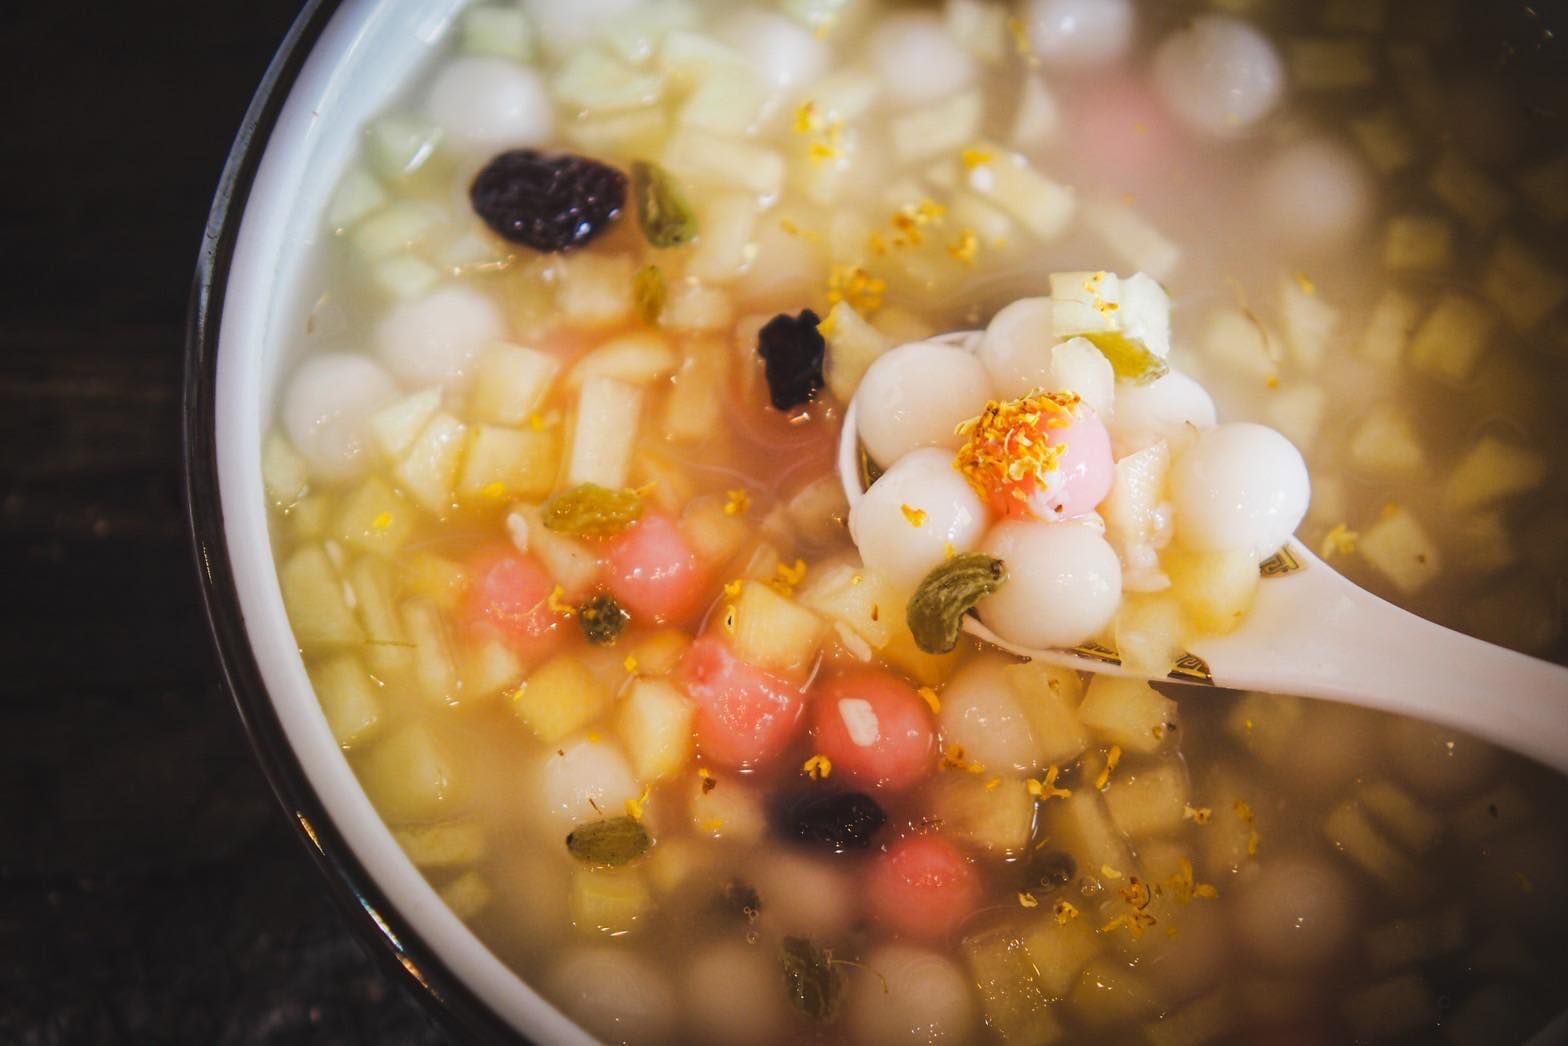 湯圓直接進甜湯煮的話會讓湯色混濁，味道也會不乾淨，會有多餘的生粉味散布在湯頭裡。